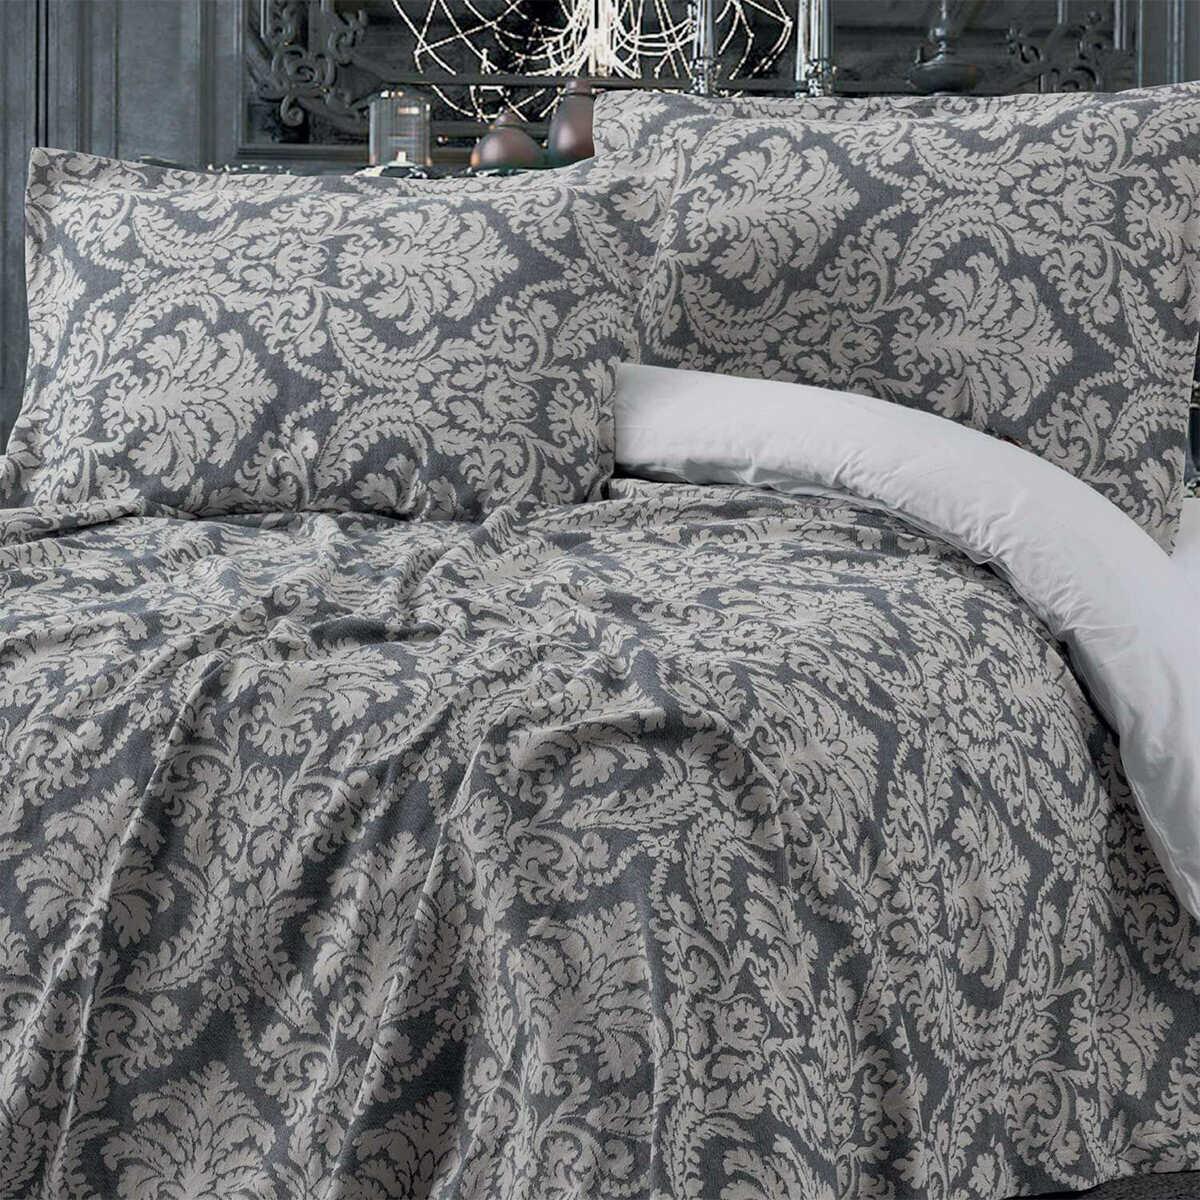 Maxstyle Vintage Gray Bedspread